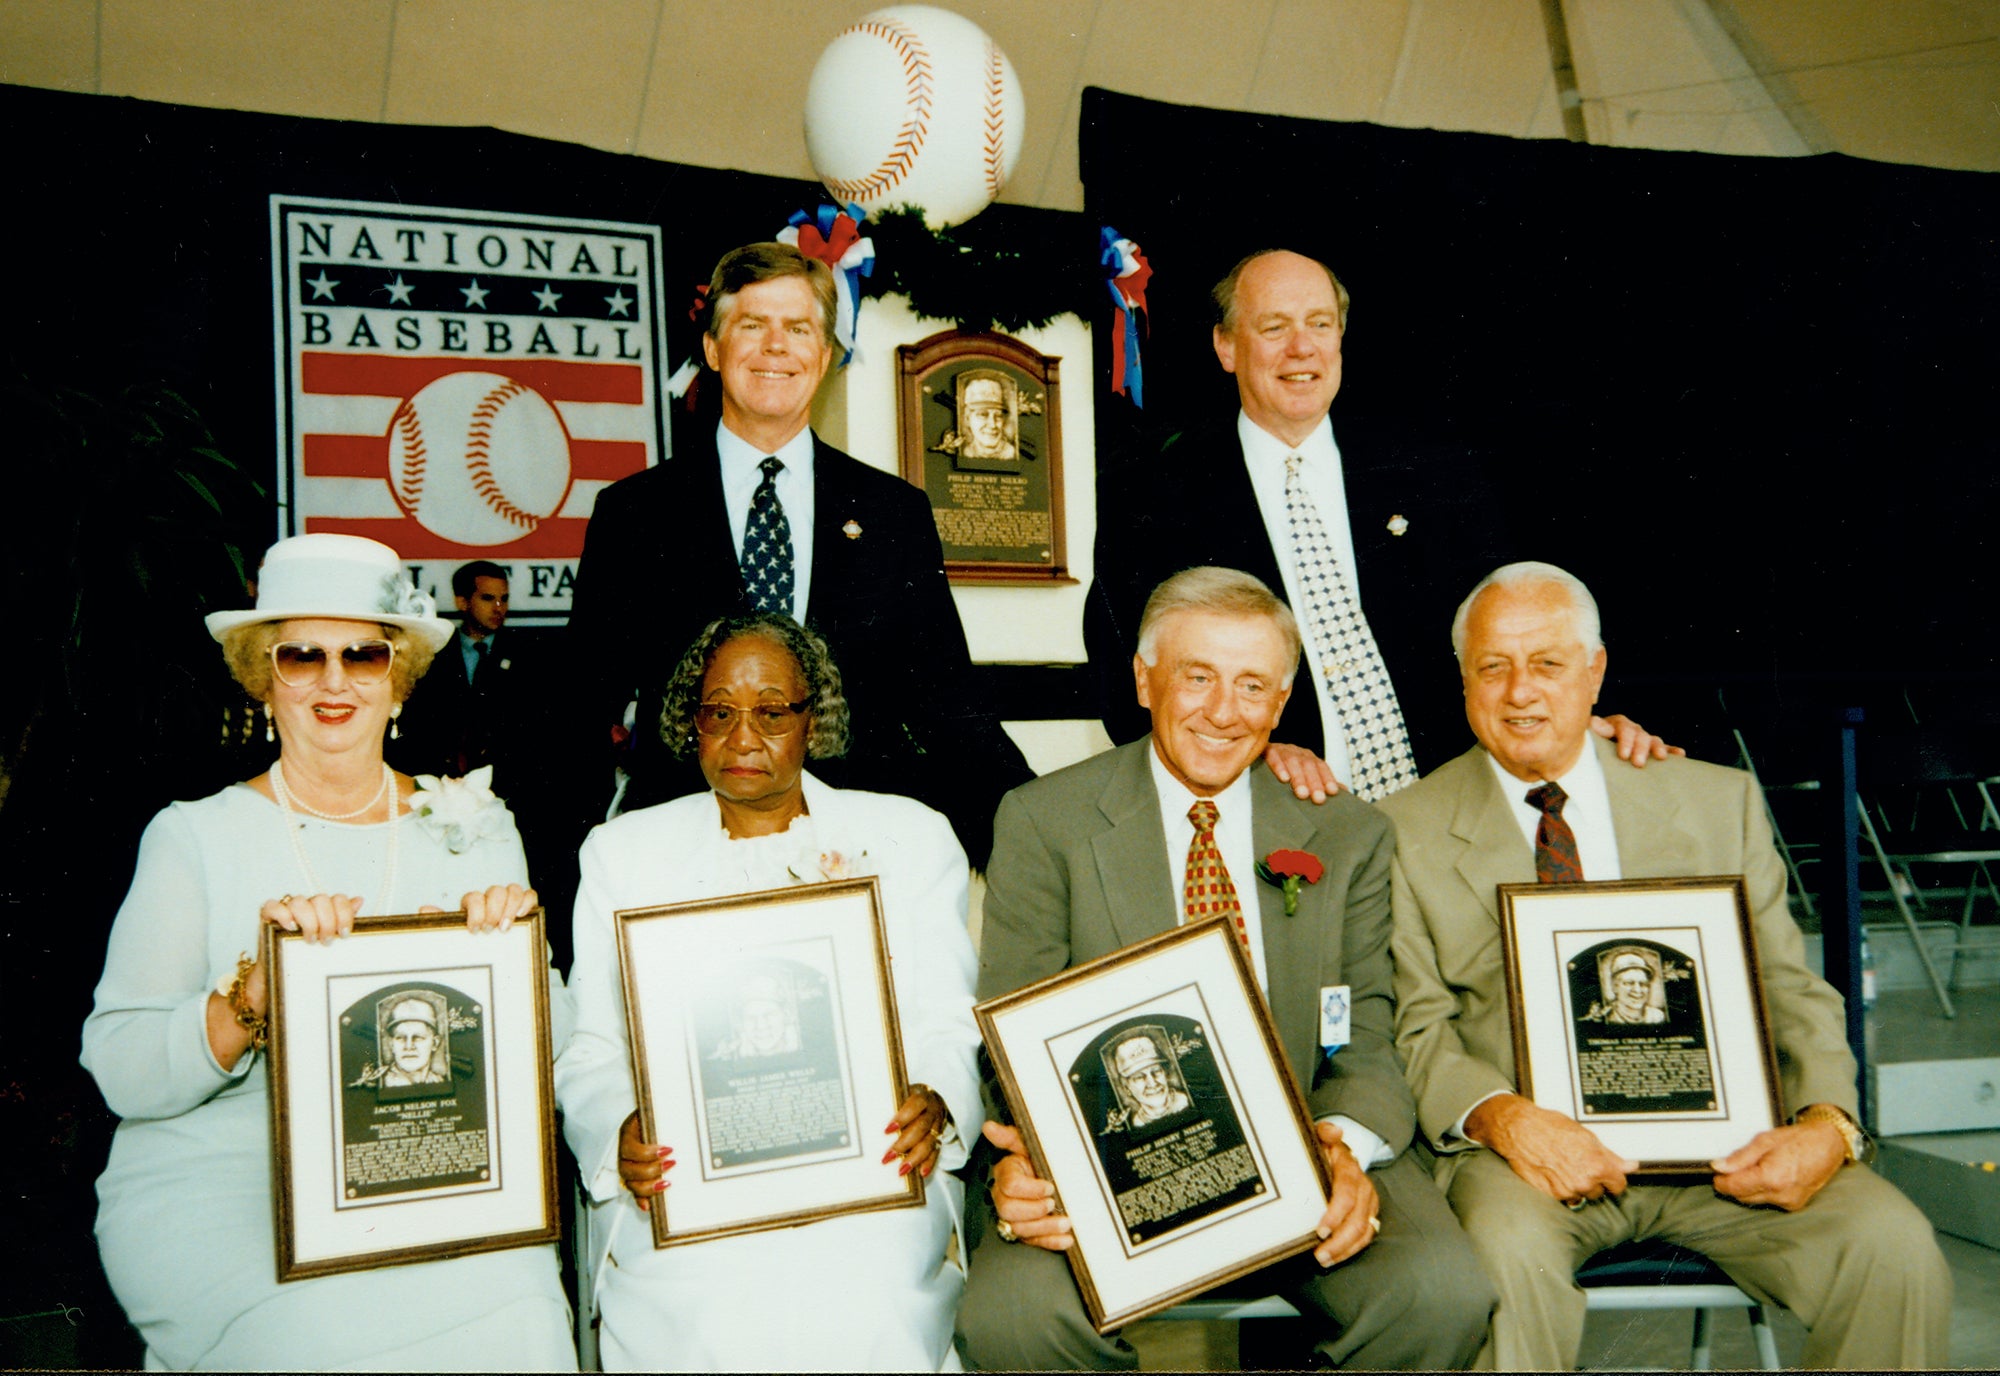 Lasorda, Tommy  Baseball Hall of Fame